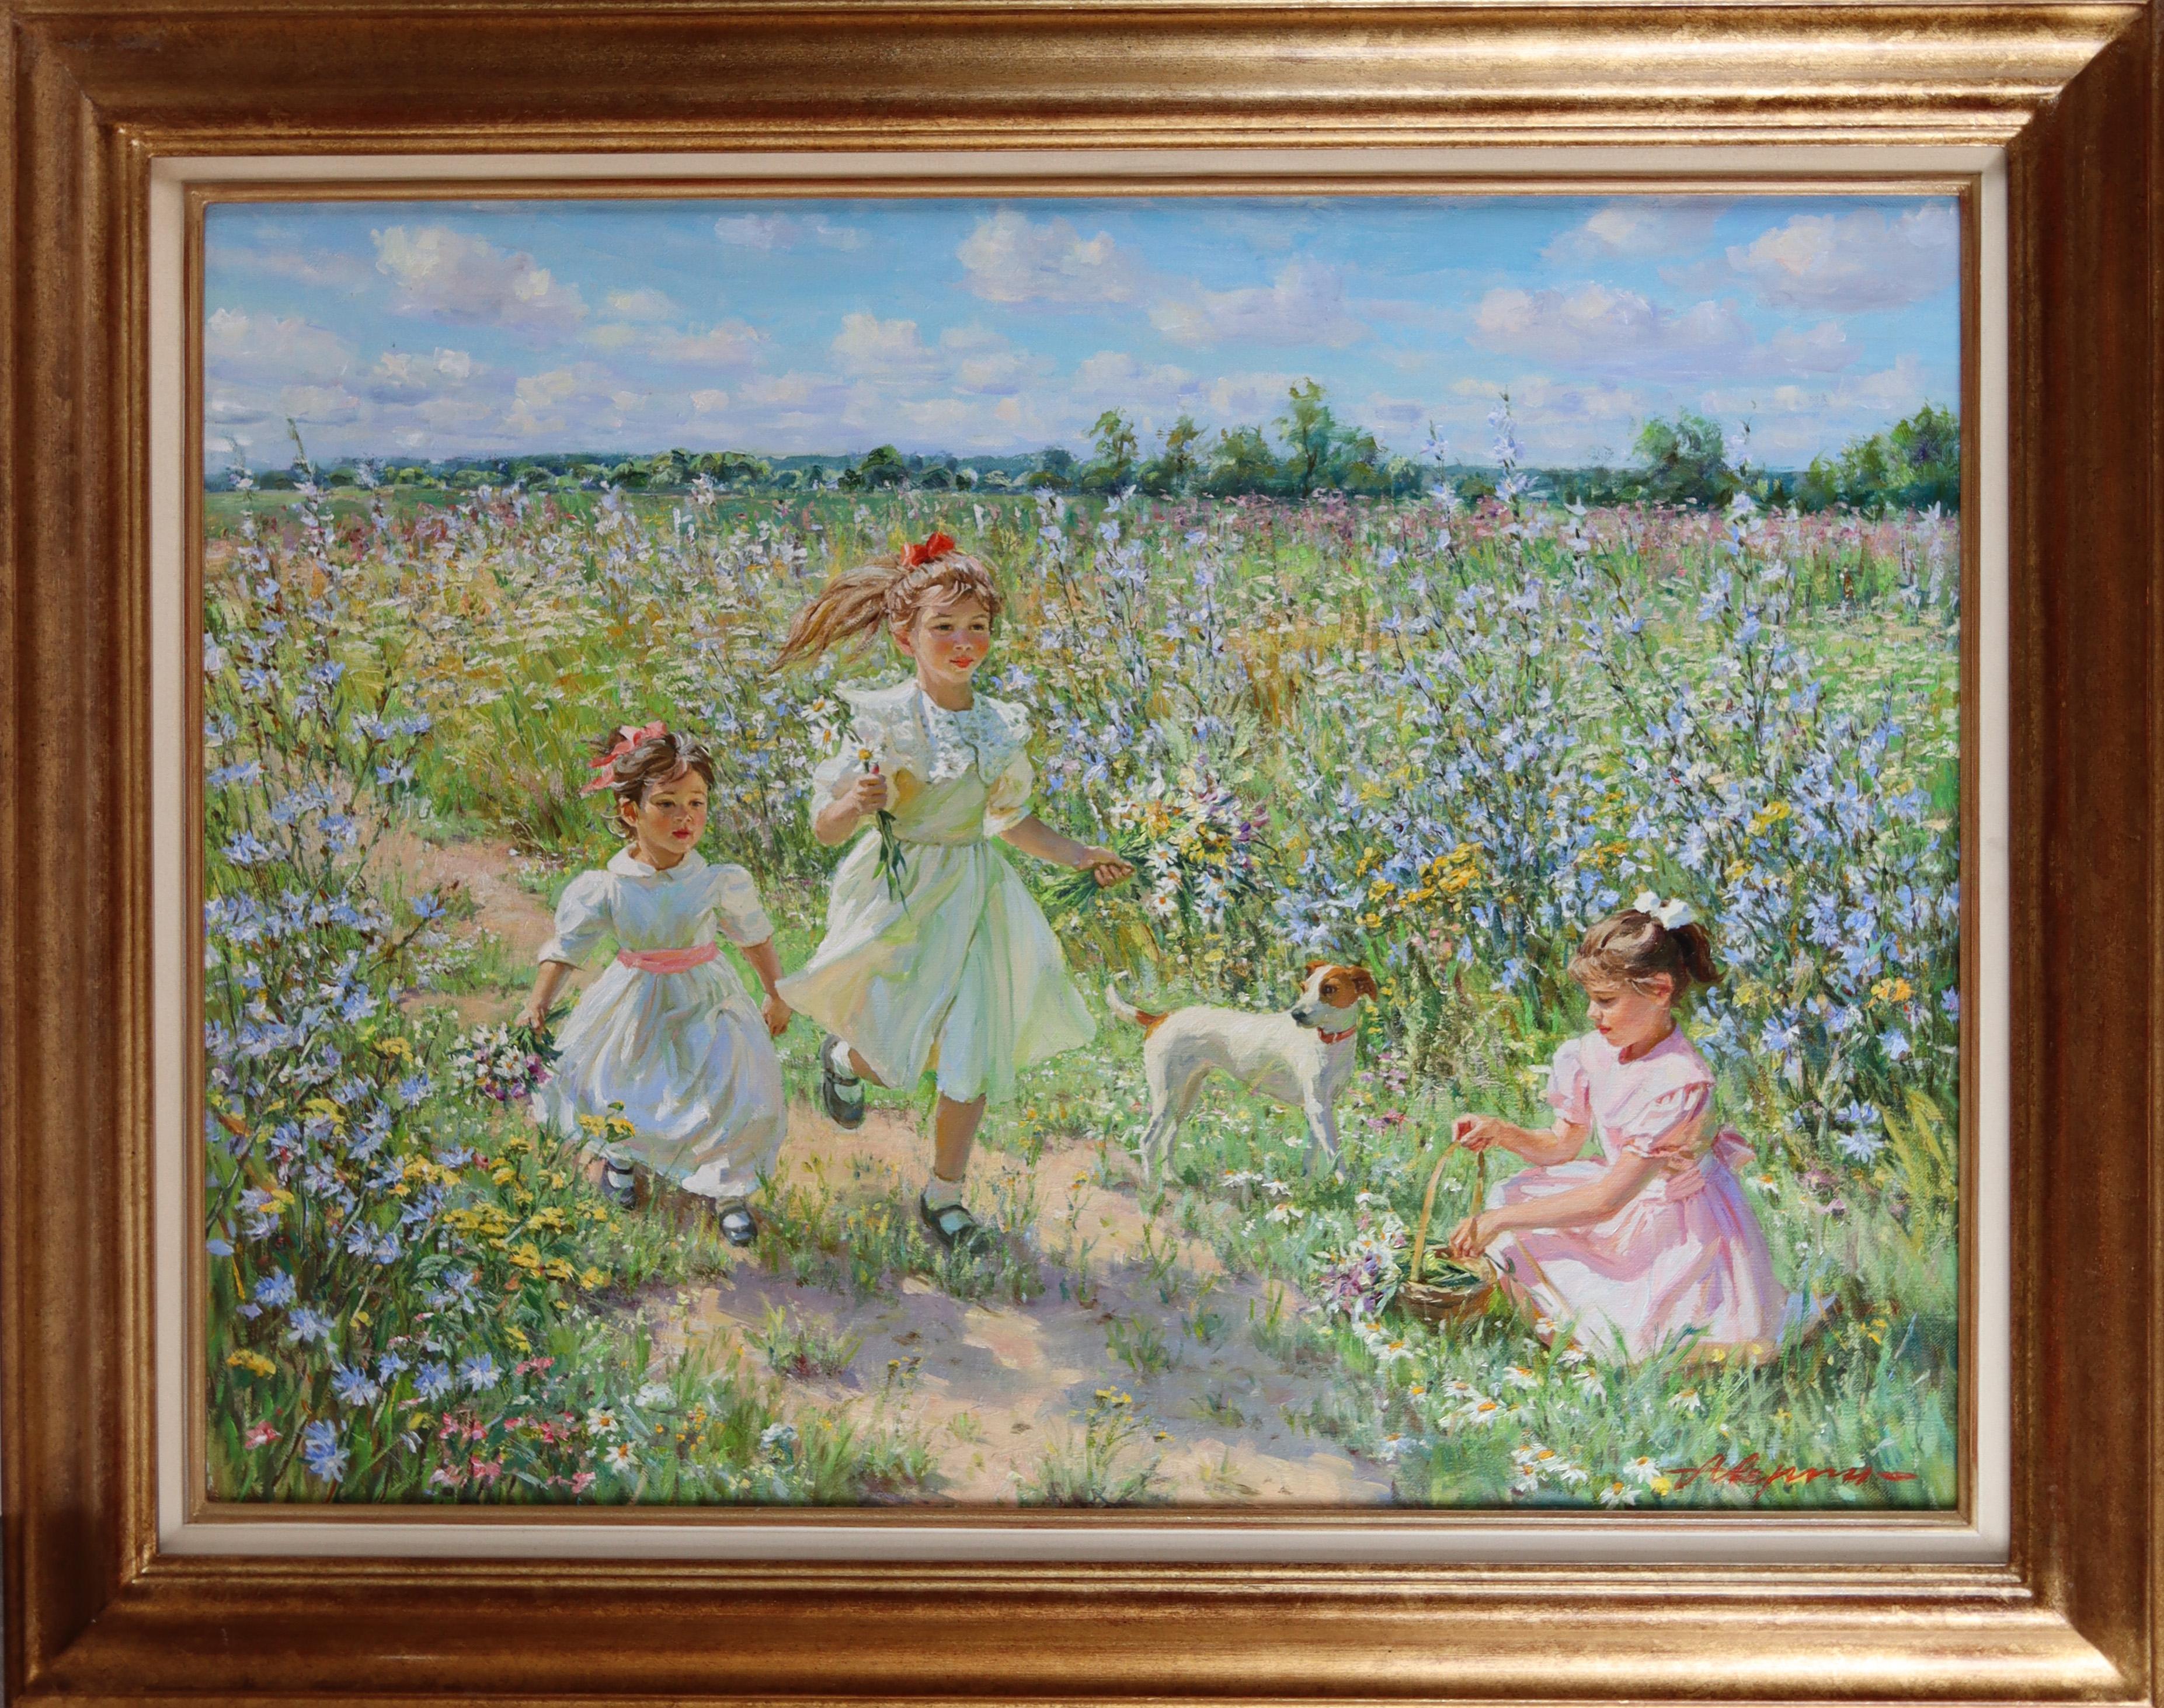 Jeunes filles jouant dans une moisson de fleurs sauvages avec un Jack Russell - Painting de Alexander Averin